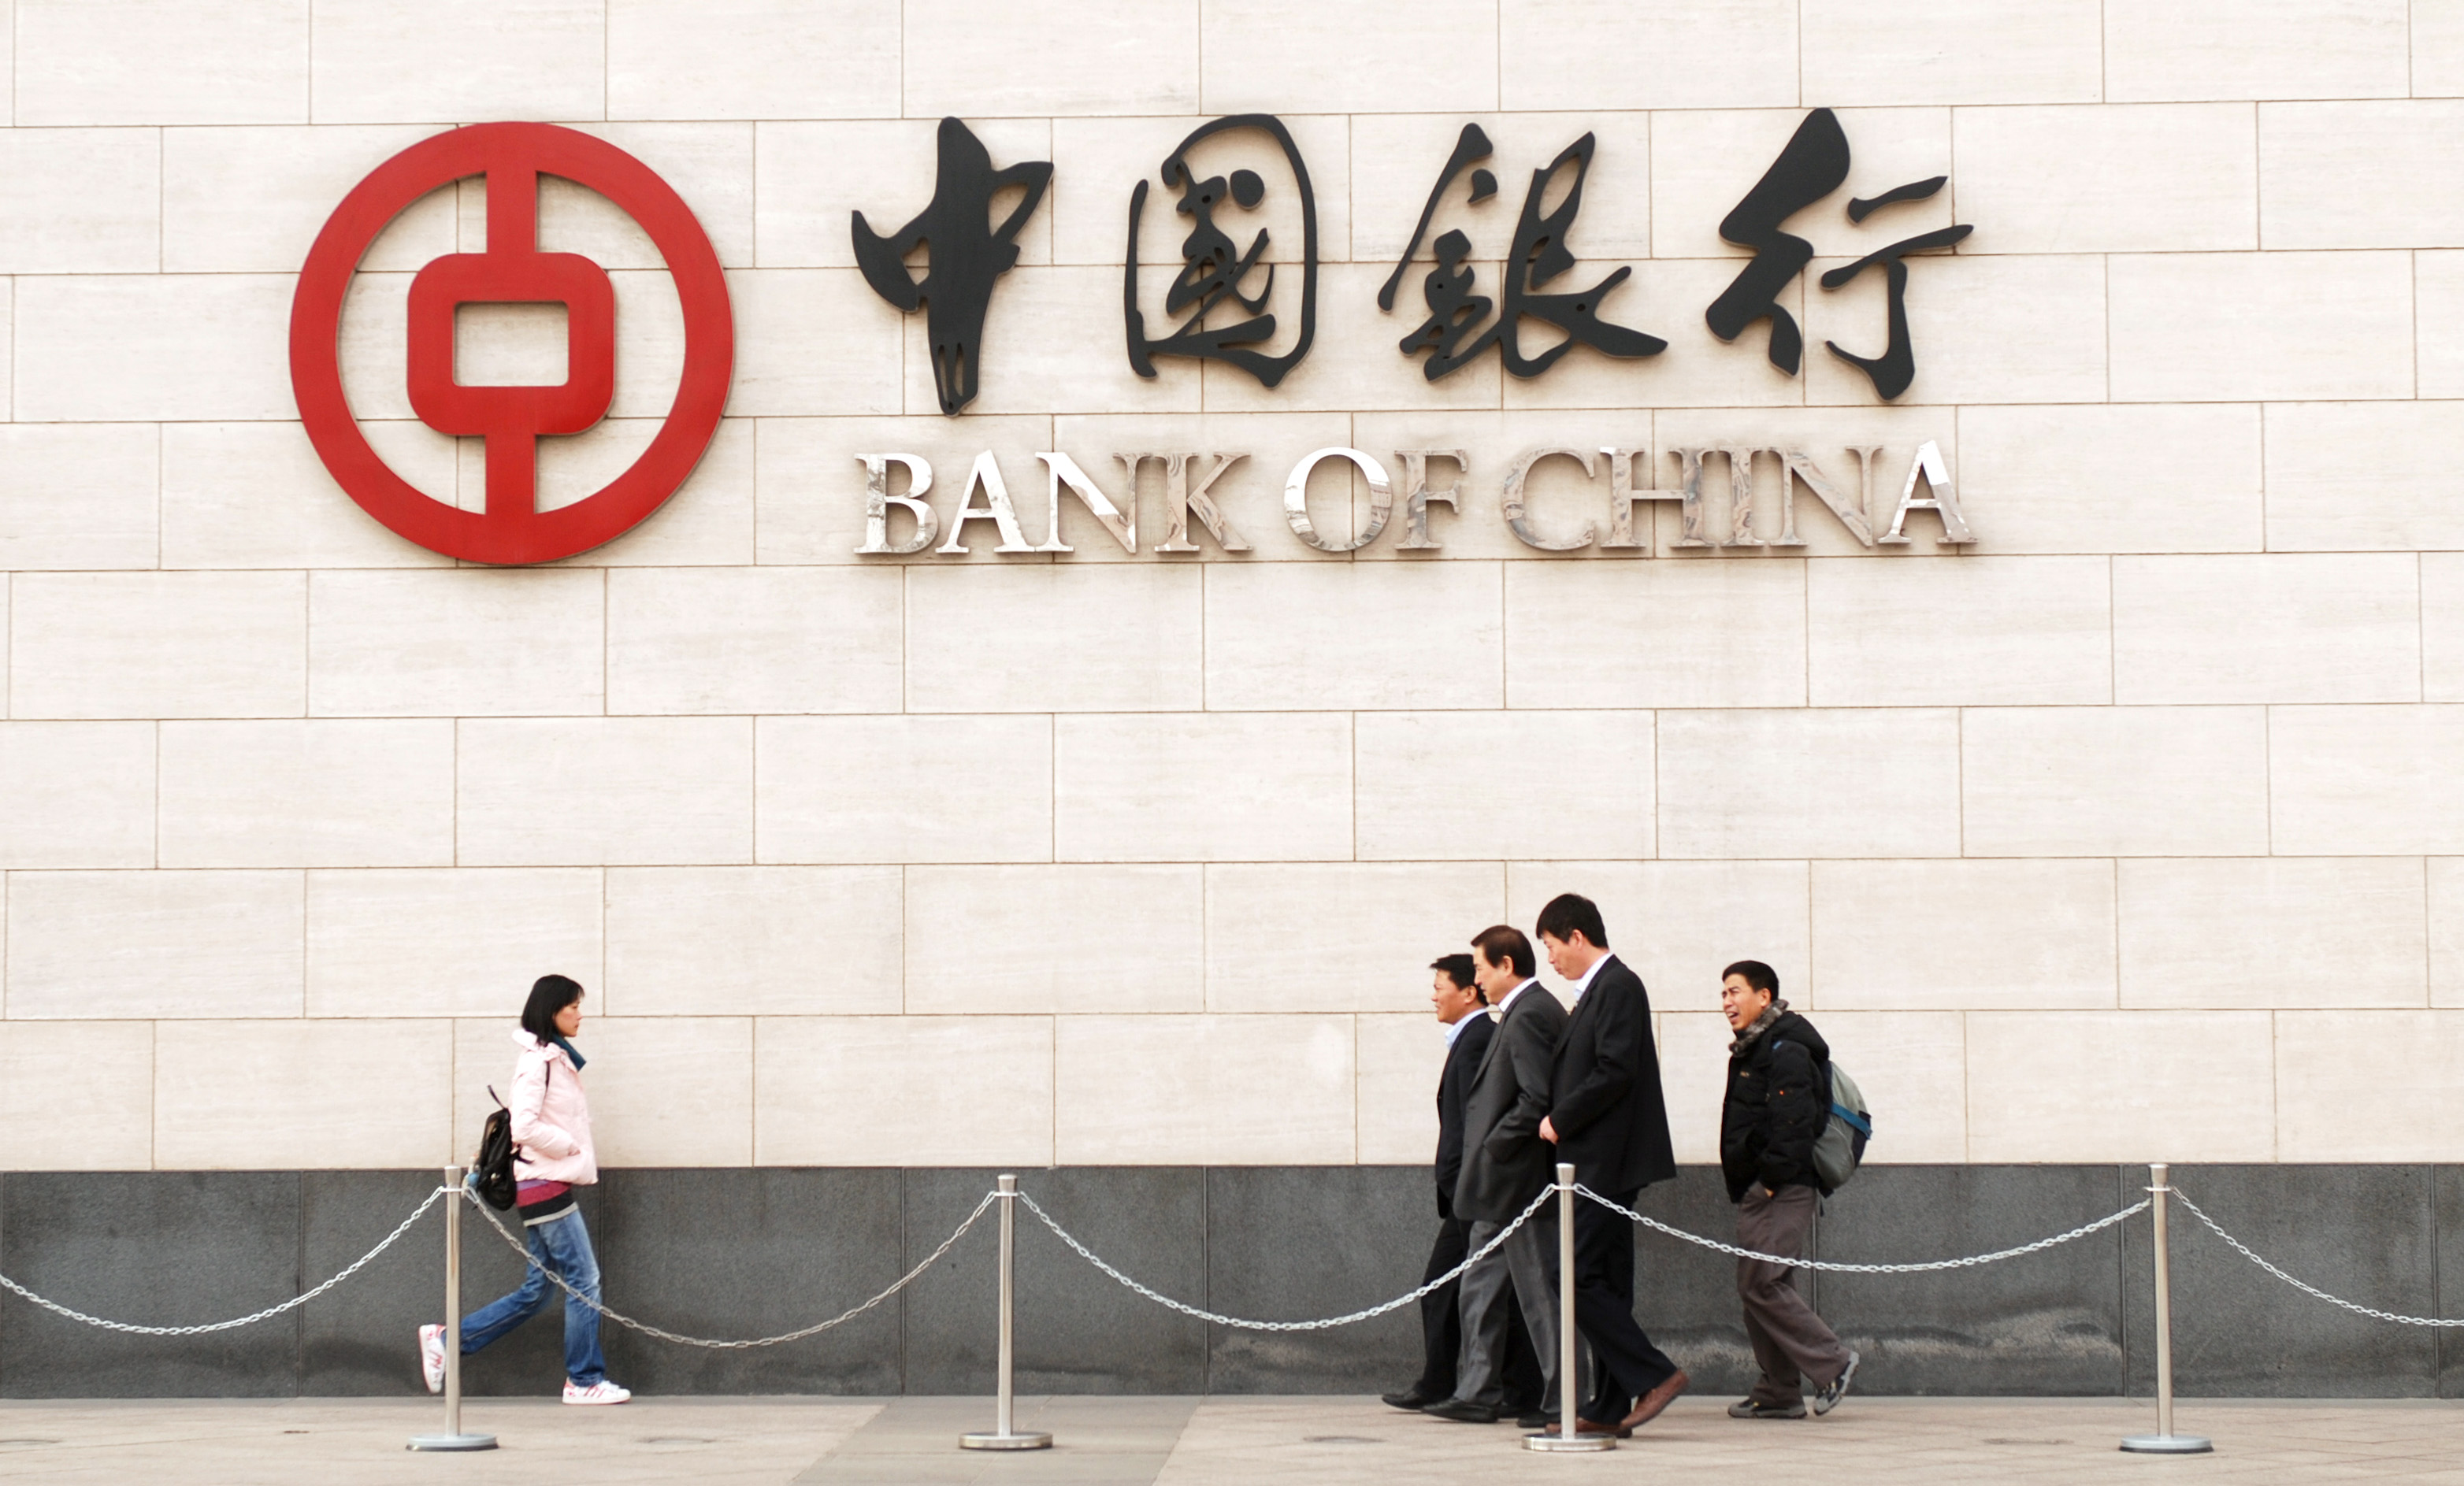 Cnaps bank of china. Китайский банк. Логотипы банков Китая. Банк Китая (Bank of China). Chinatown банк Китая.